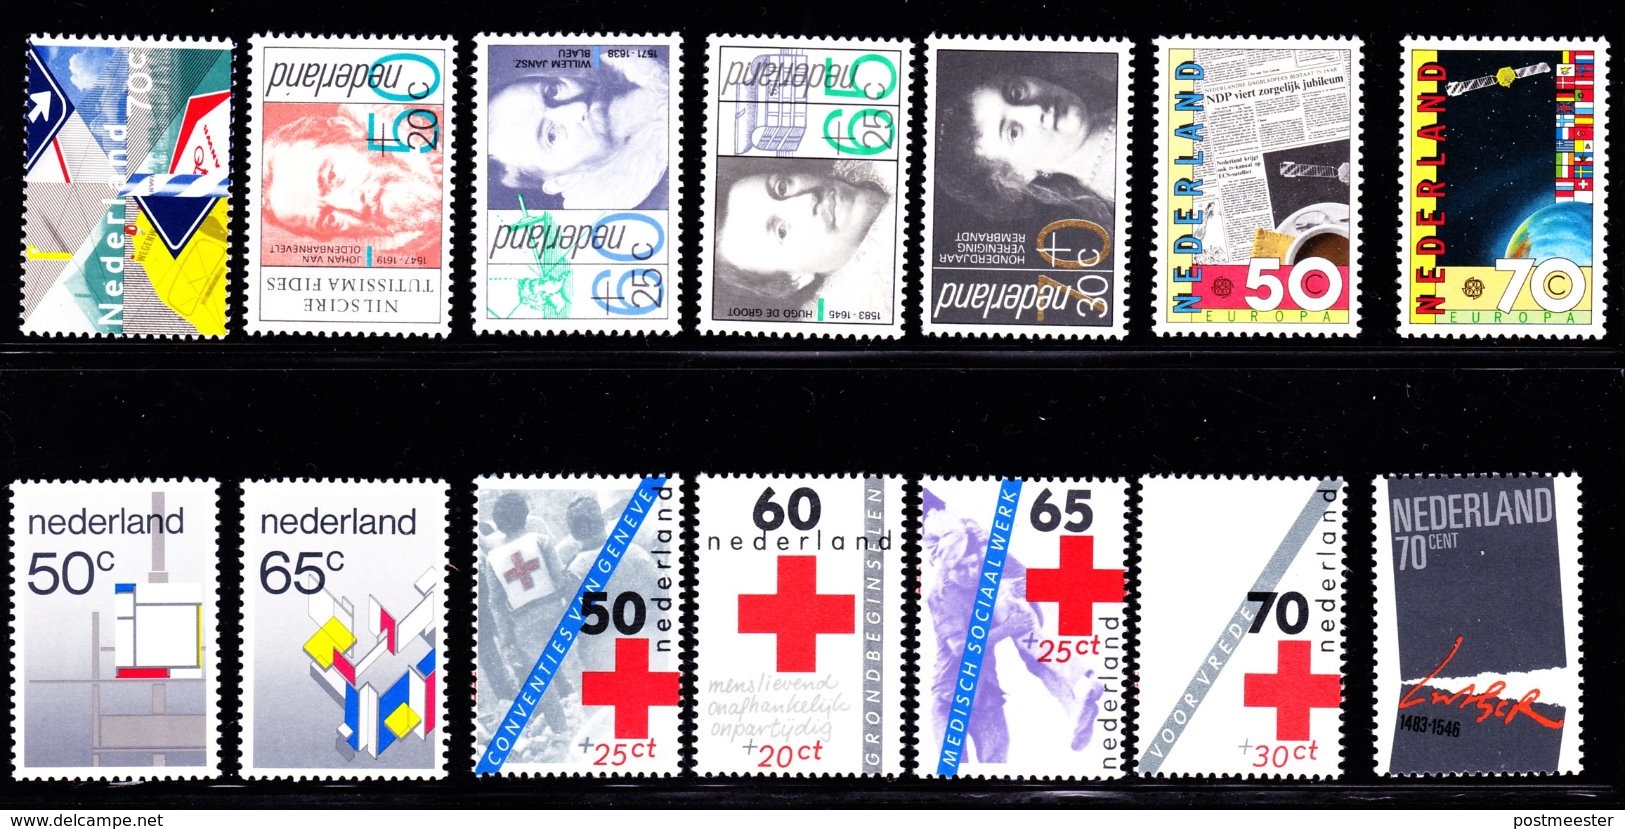 Nederland: Volledig Jaar 1983 - 18 Zegels, 1 Blok, 1 Boekje - Postfris - Années Complètes